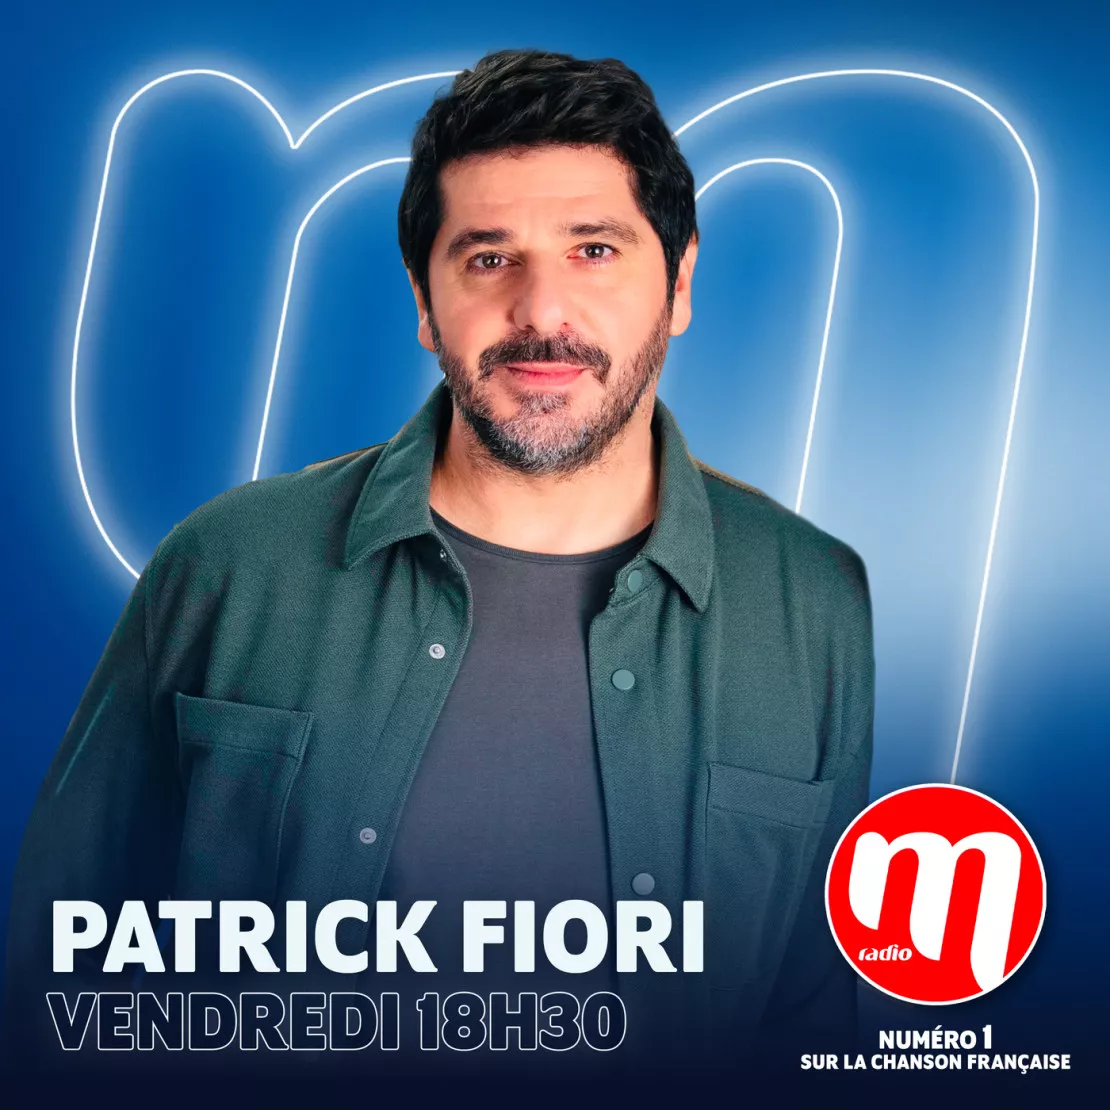 Patrick Fiori